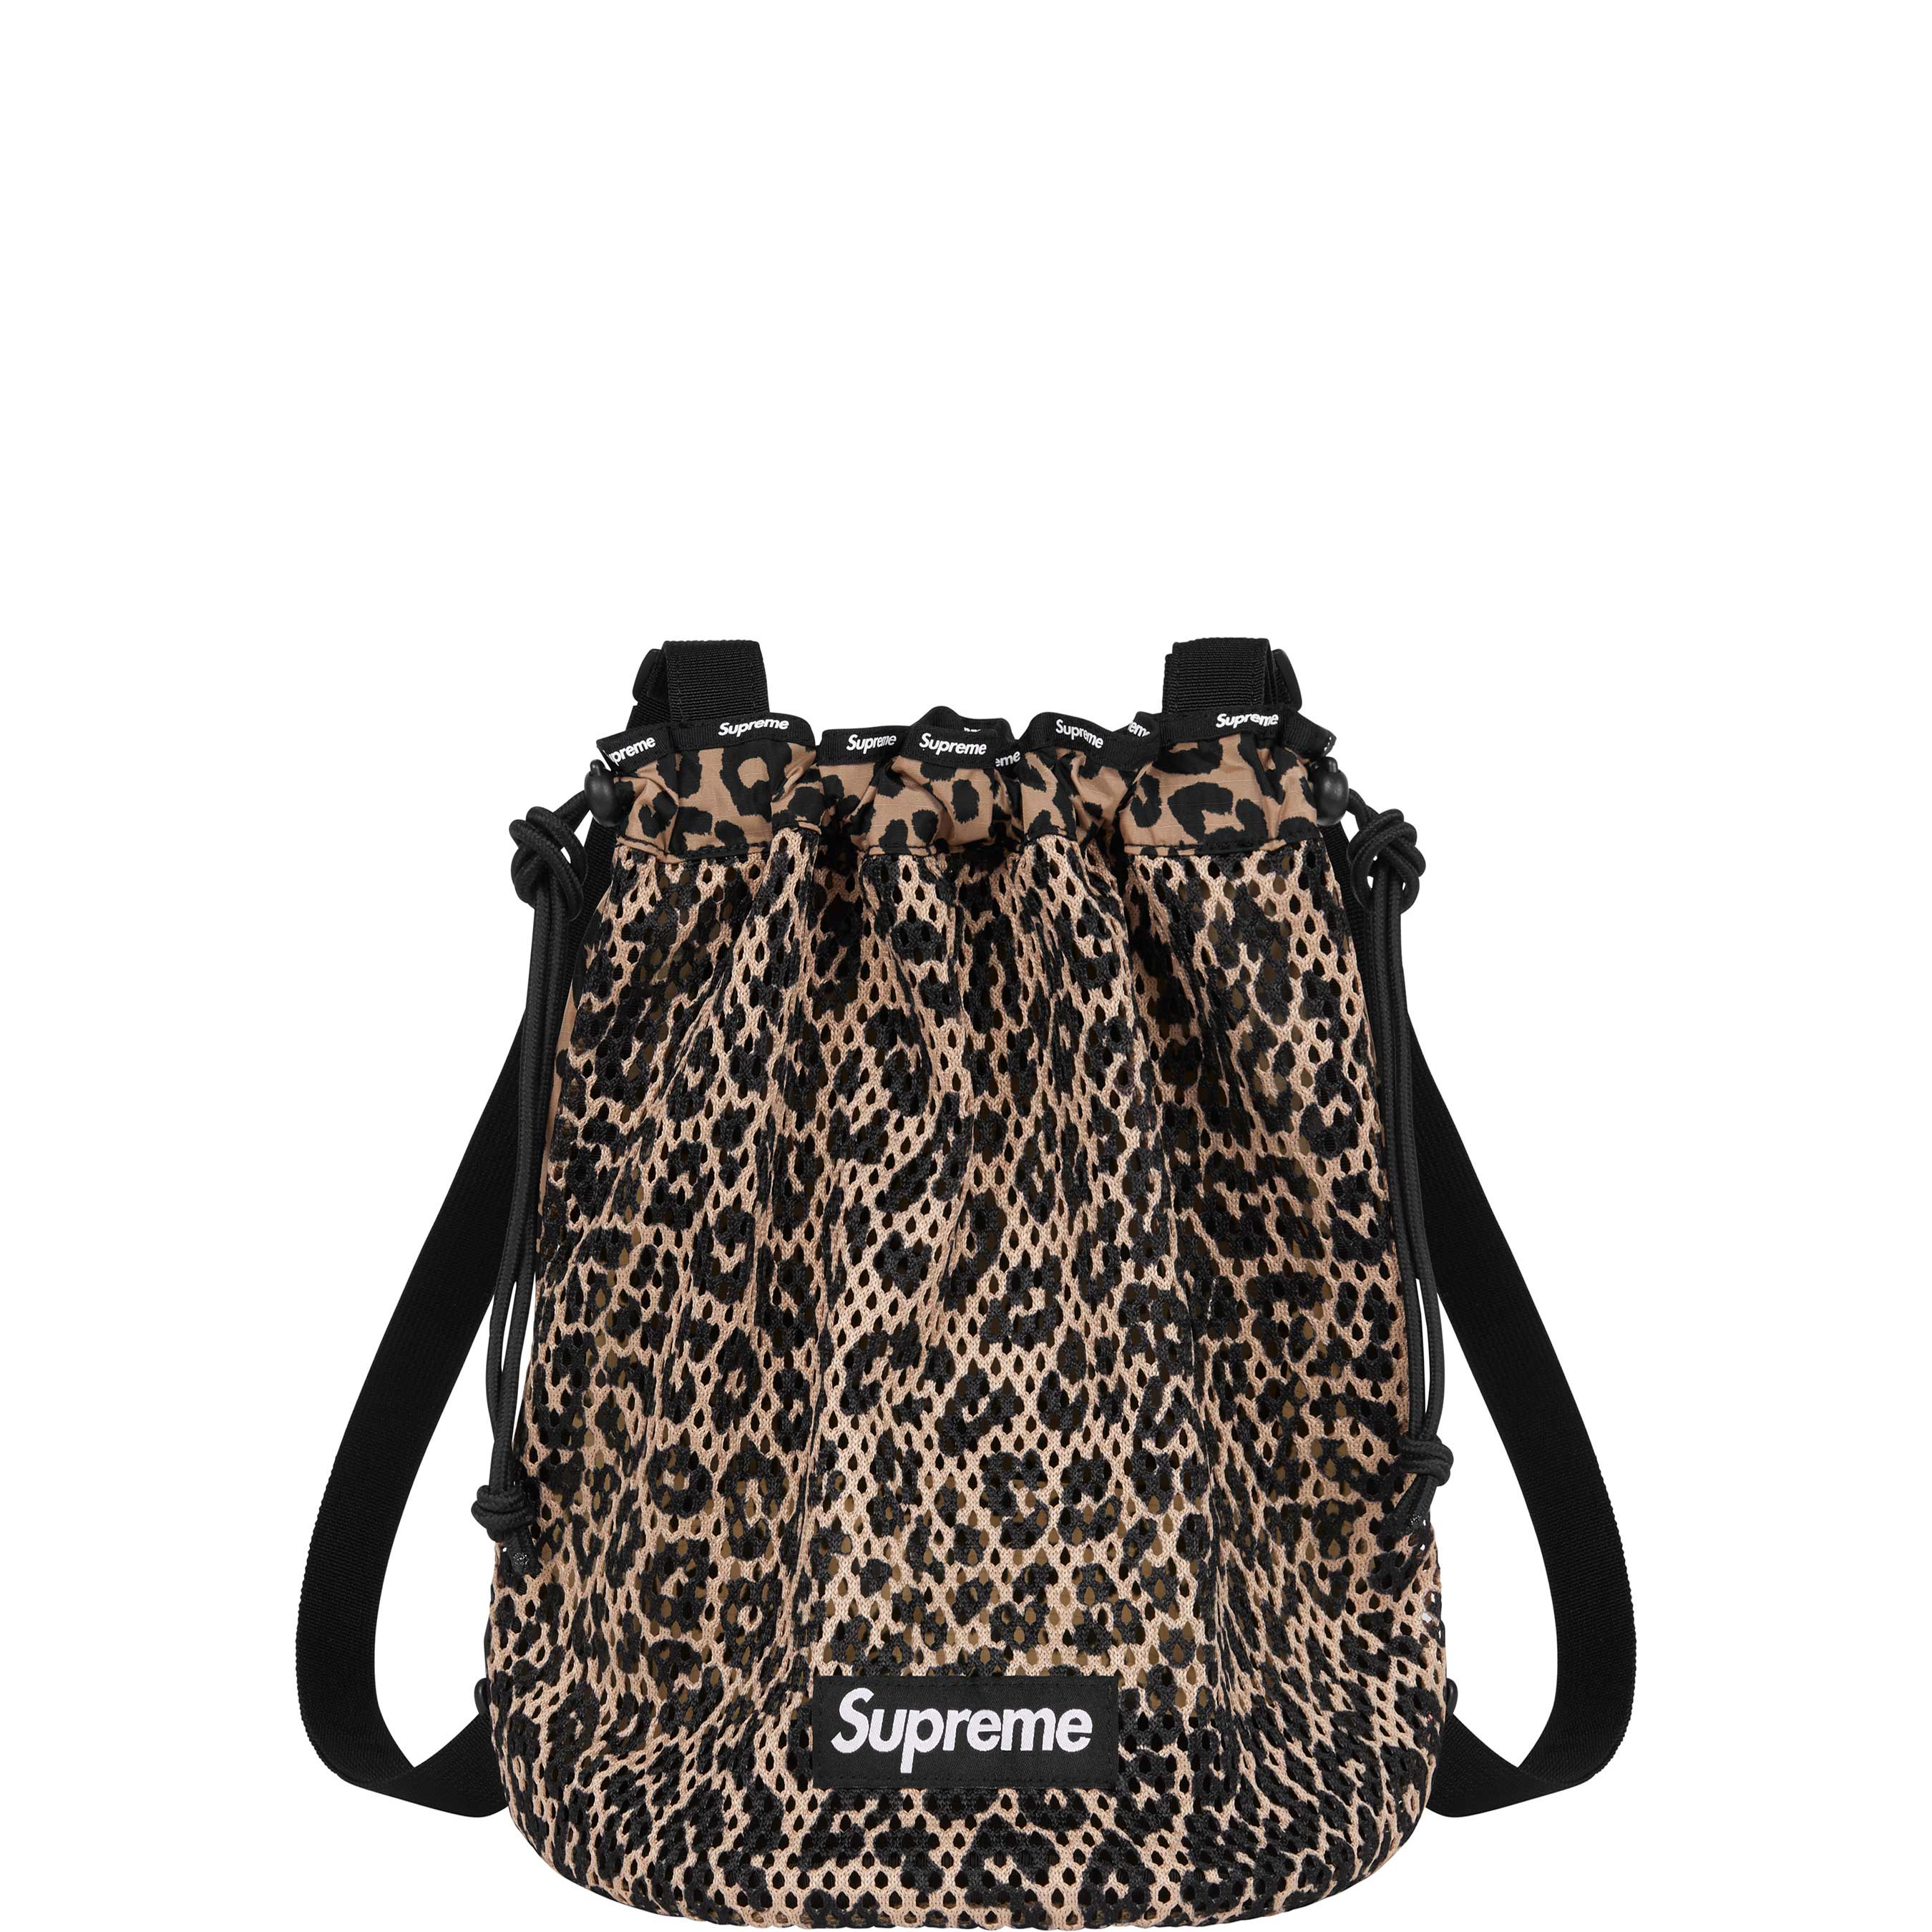 Supreme』/シュプリーム Mesh Backpack Leopard - リュック/バックパック